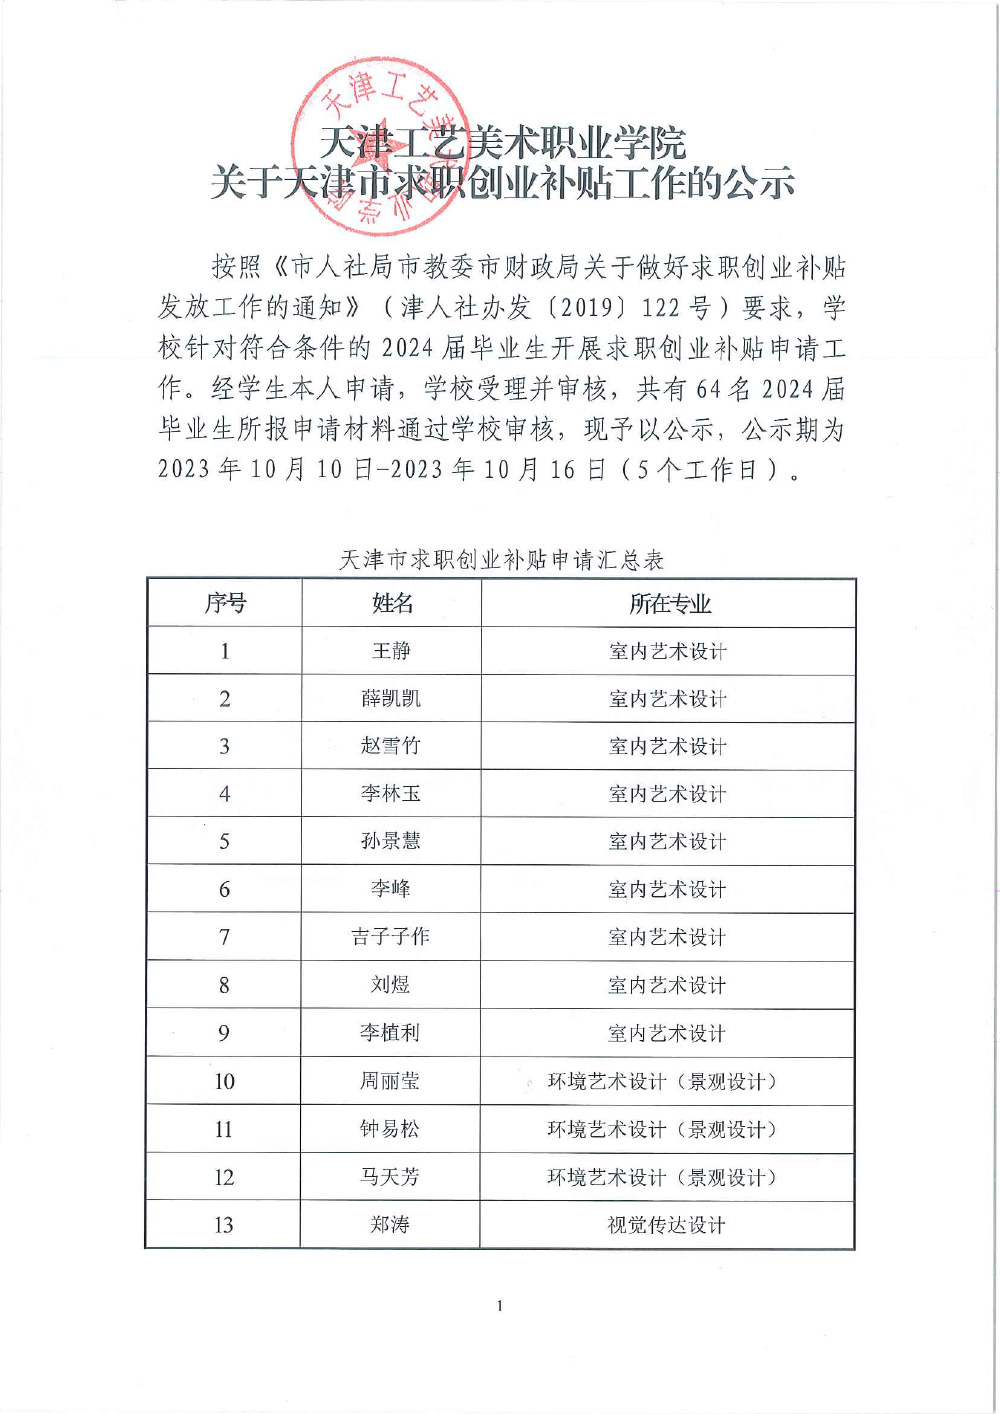 天下足球网天津市求职创业补贴工作的公示(1)-1.jpg